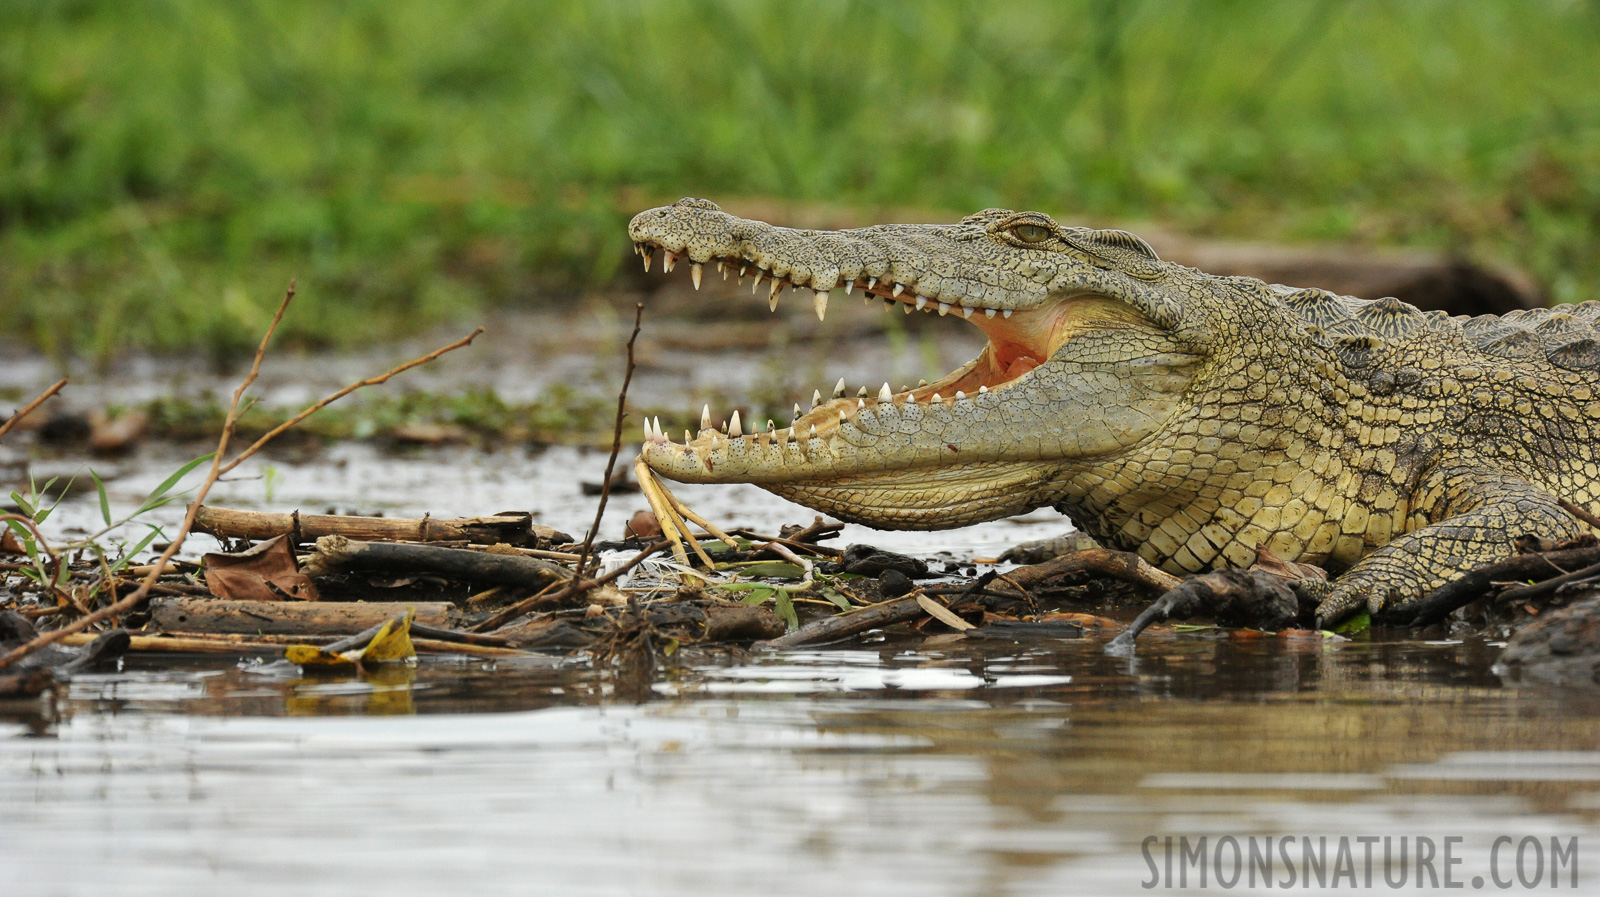 Crocodylus niloticus pauciscutatus [550 mm, 1/2500 sec at f / 8.0, ISO 2000]